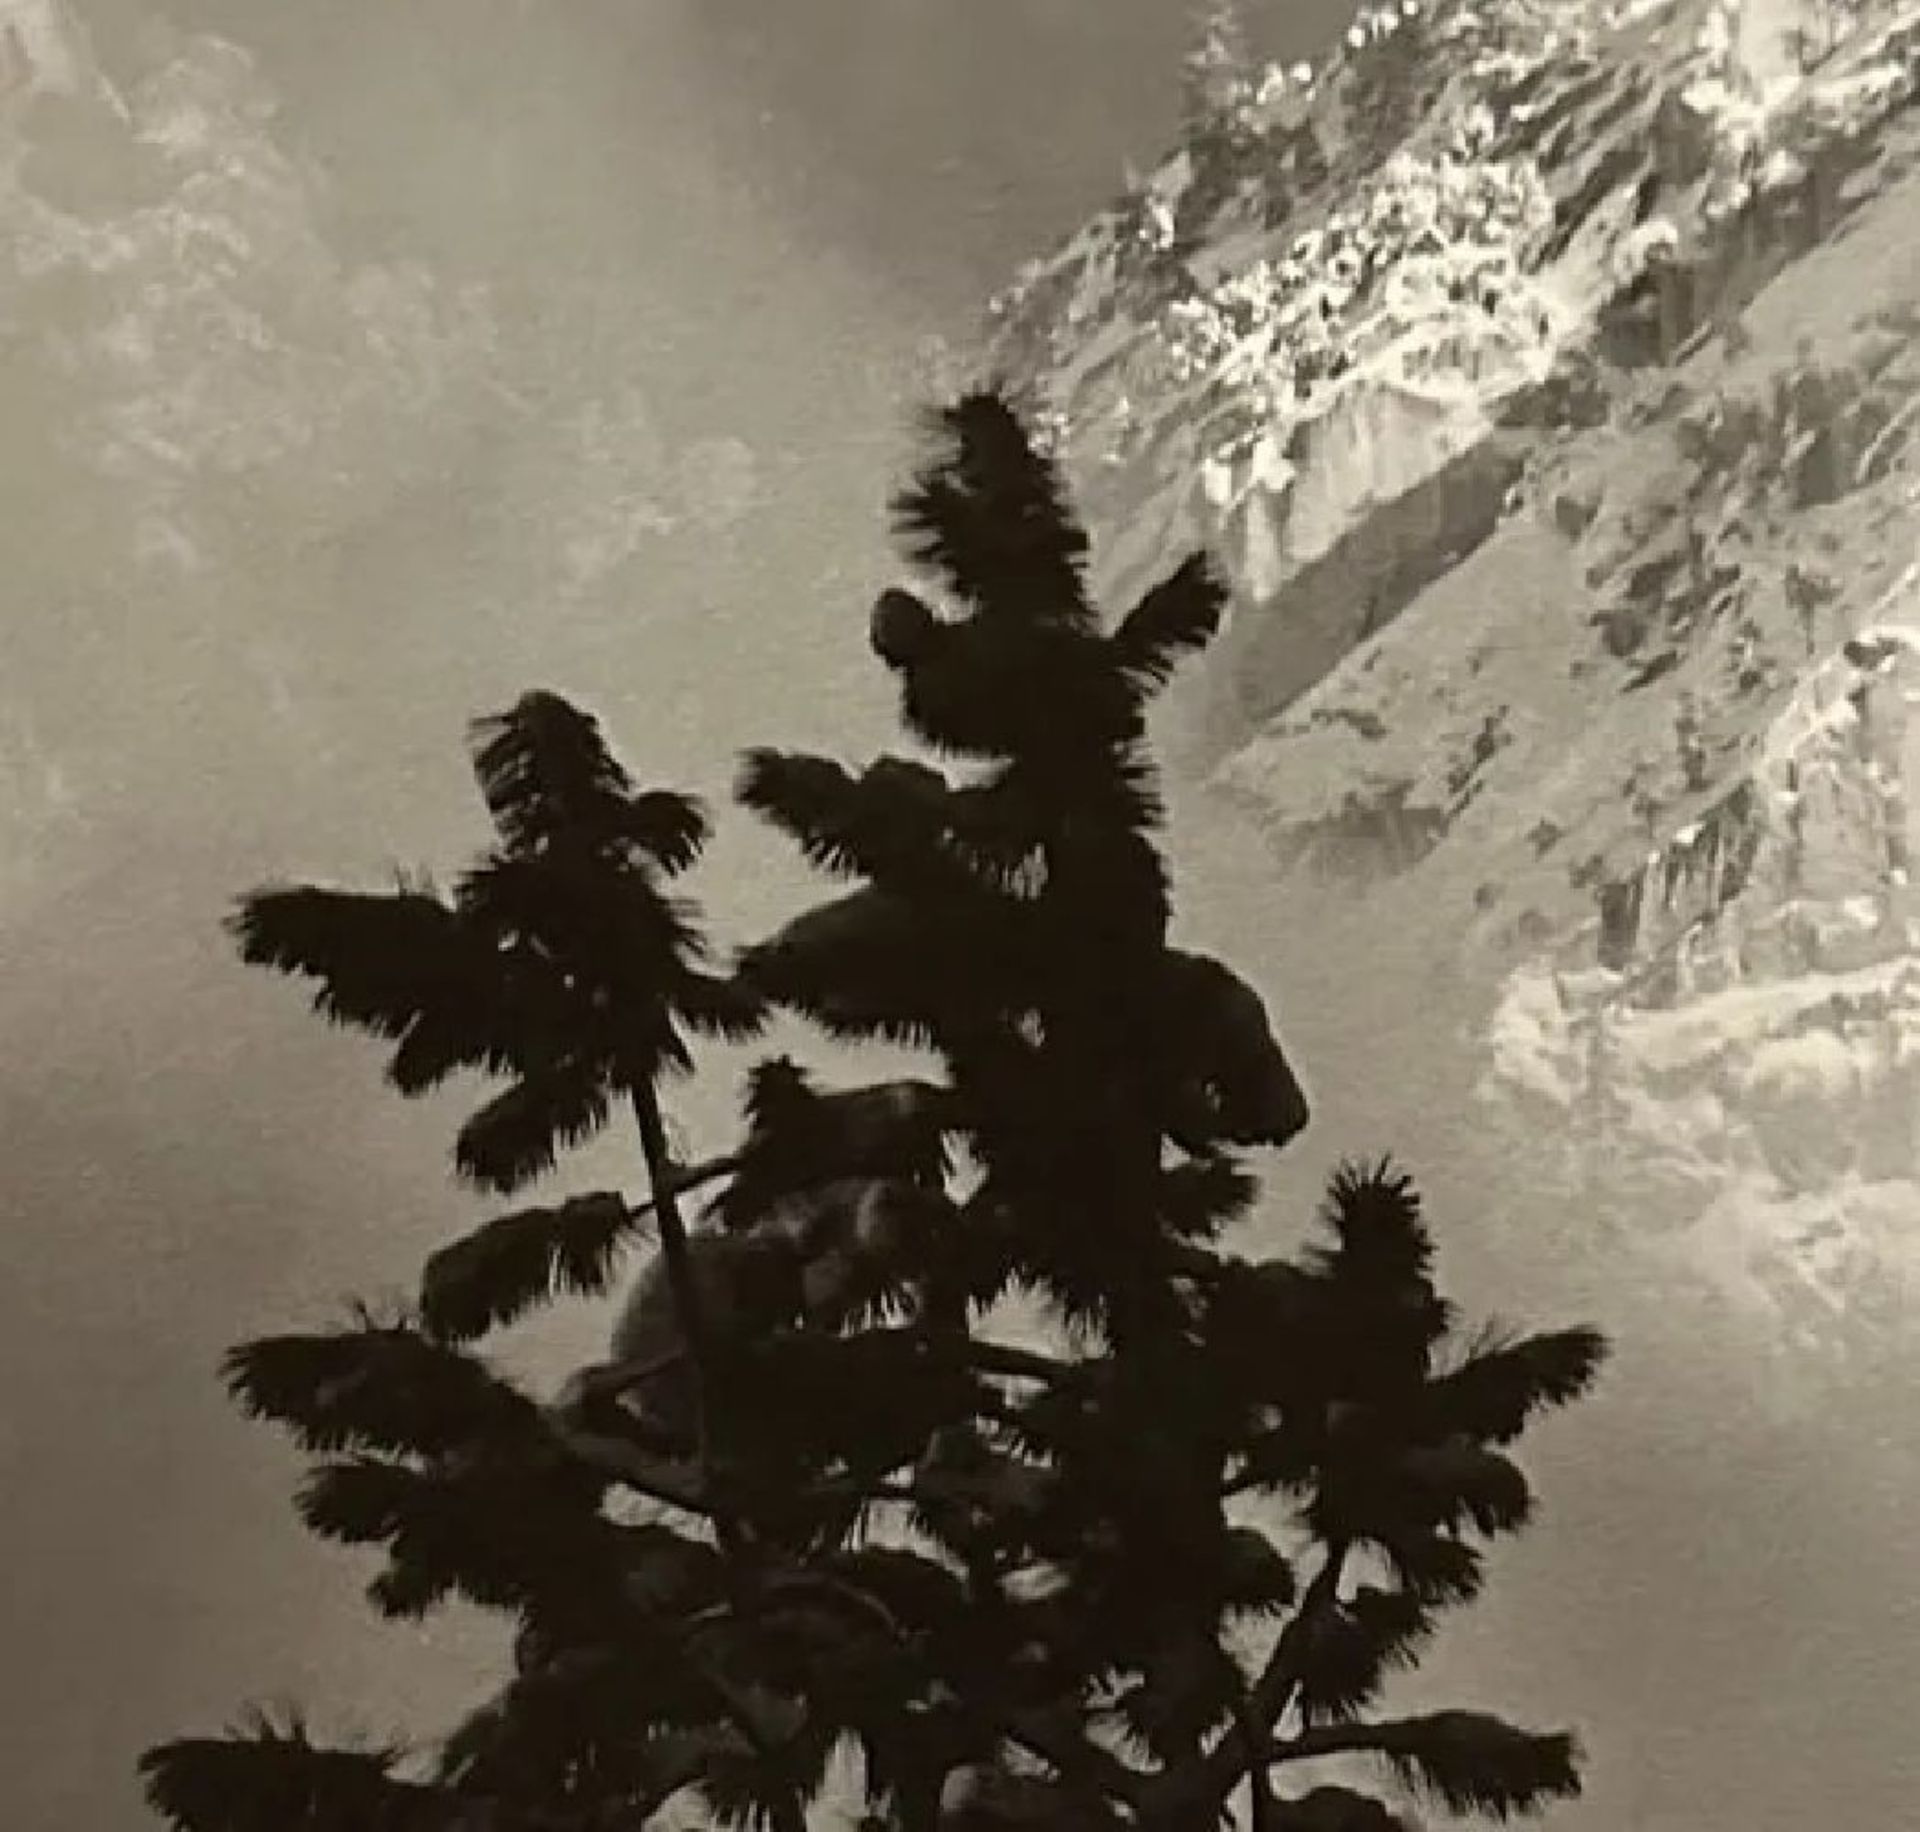 Ansel Adams "Eagle Peak" Print - Bild 6 aus 6